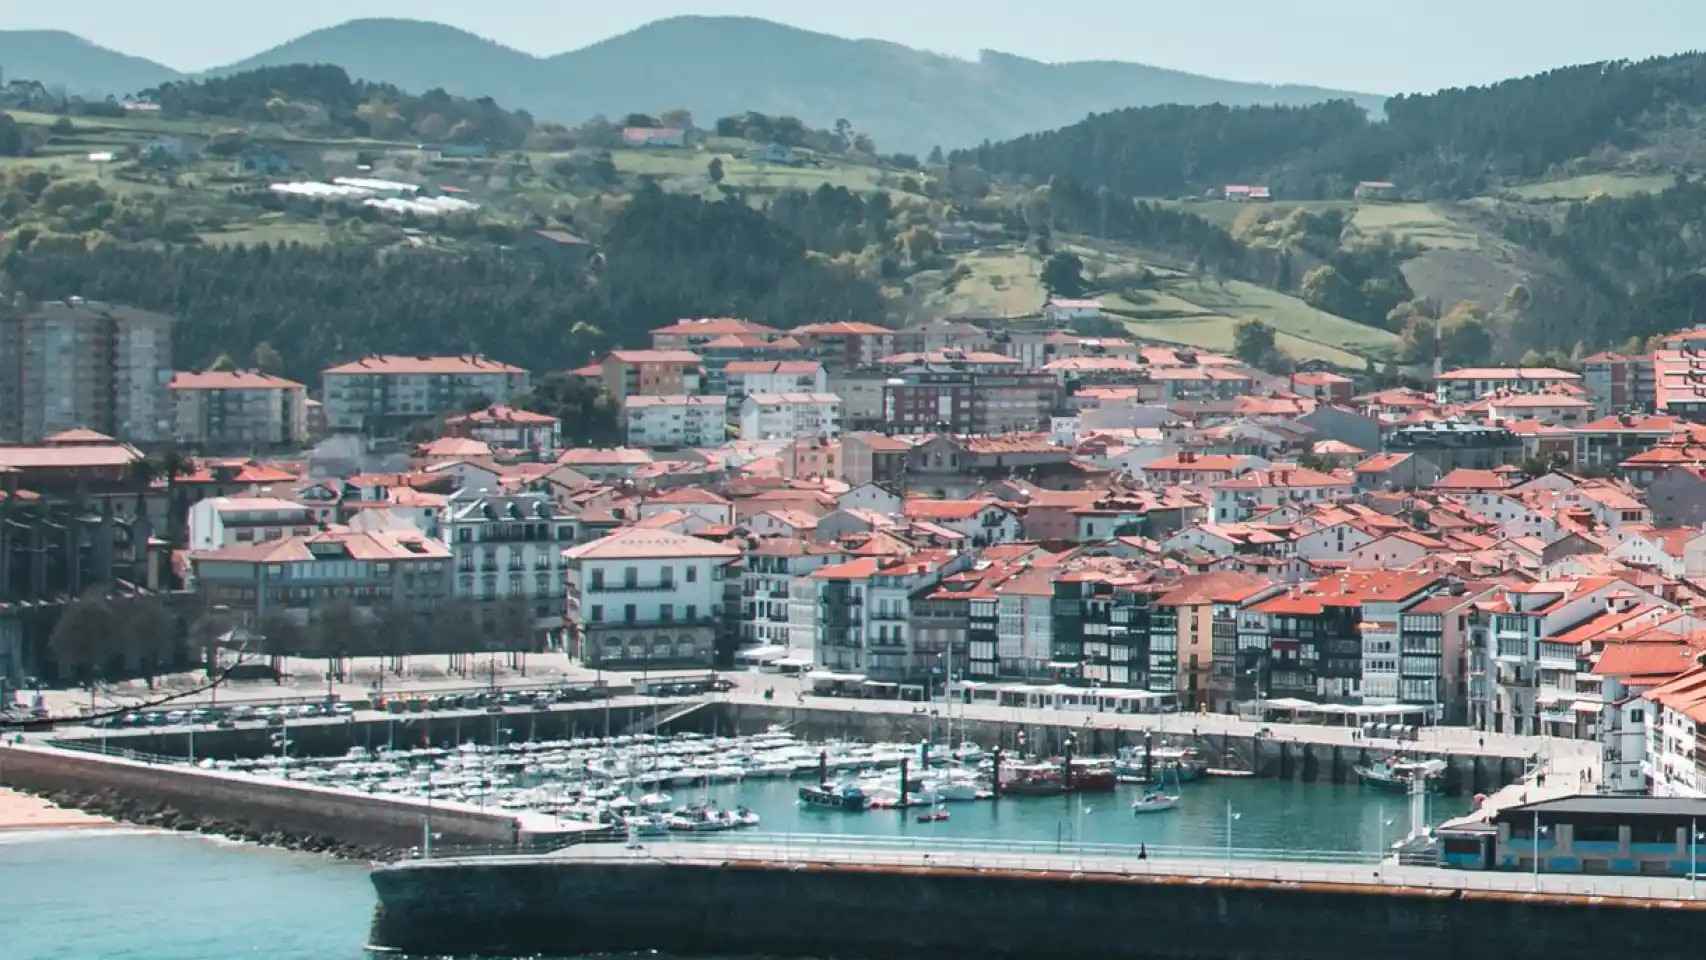 ni bermeo ni getaria: este es el pueblo considerado como el más bonito del país vasco